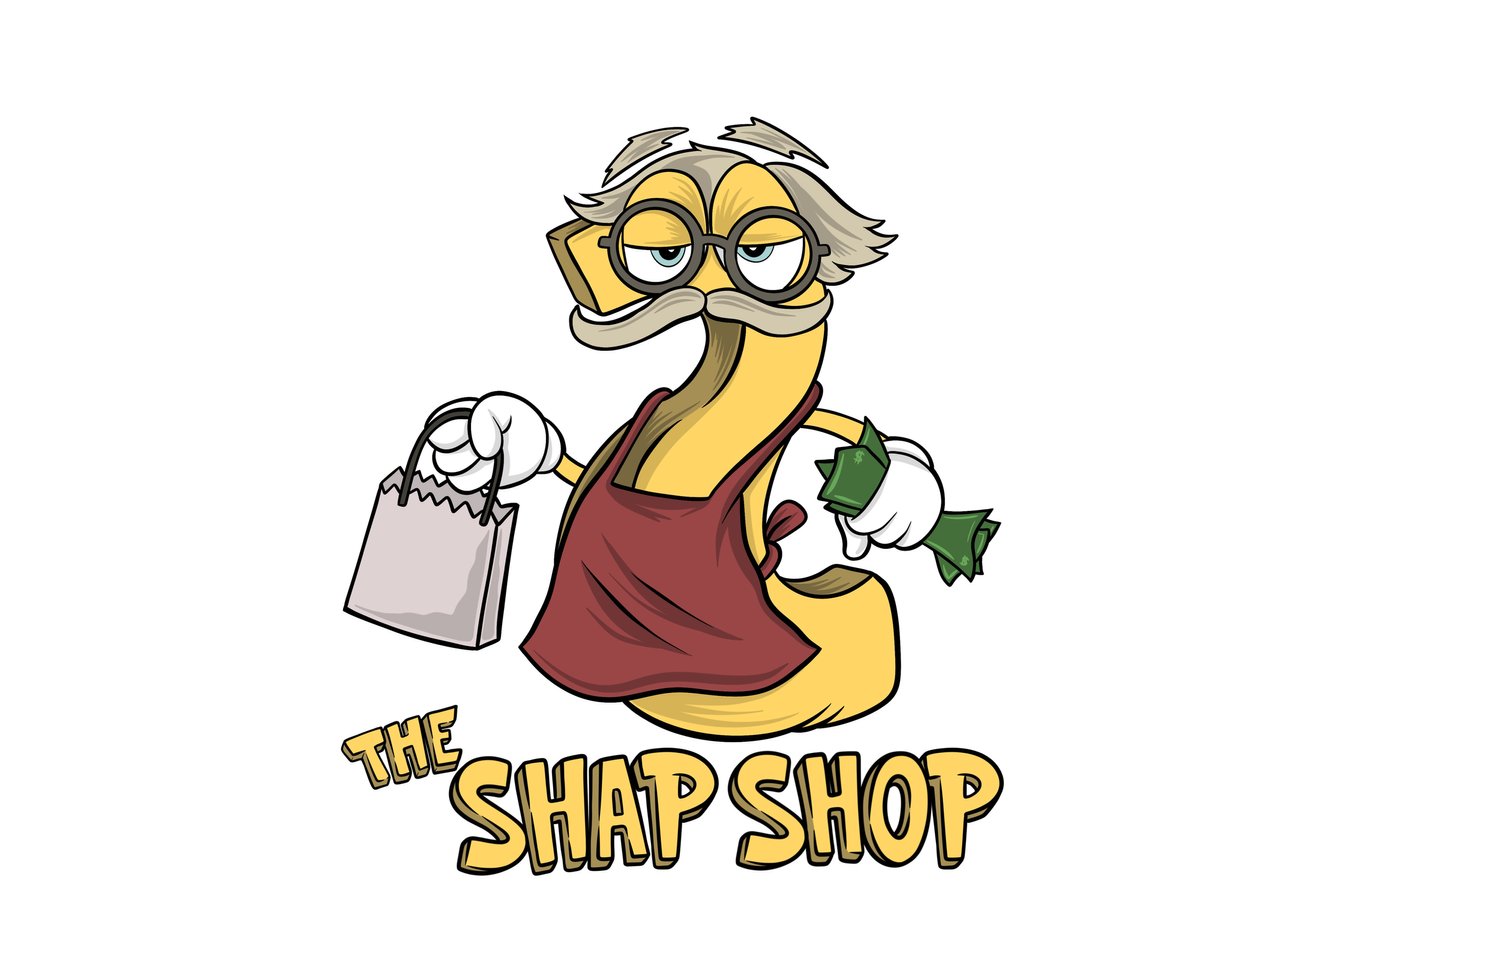 The Shap Shop